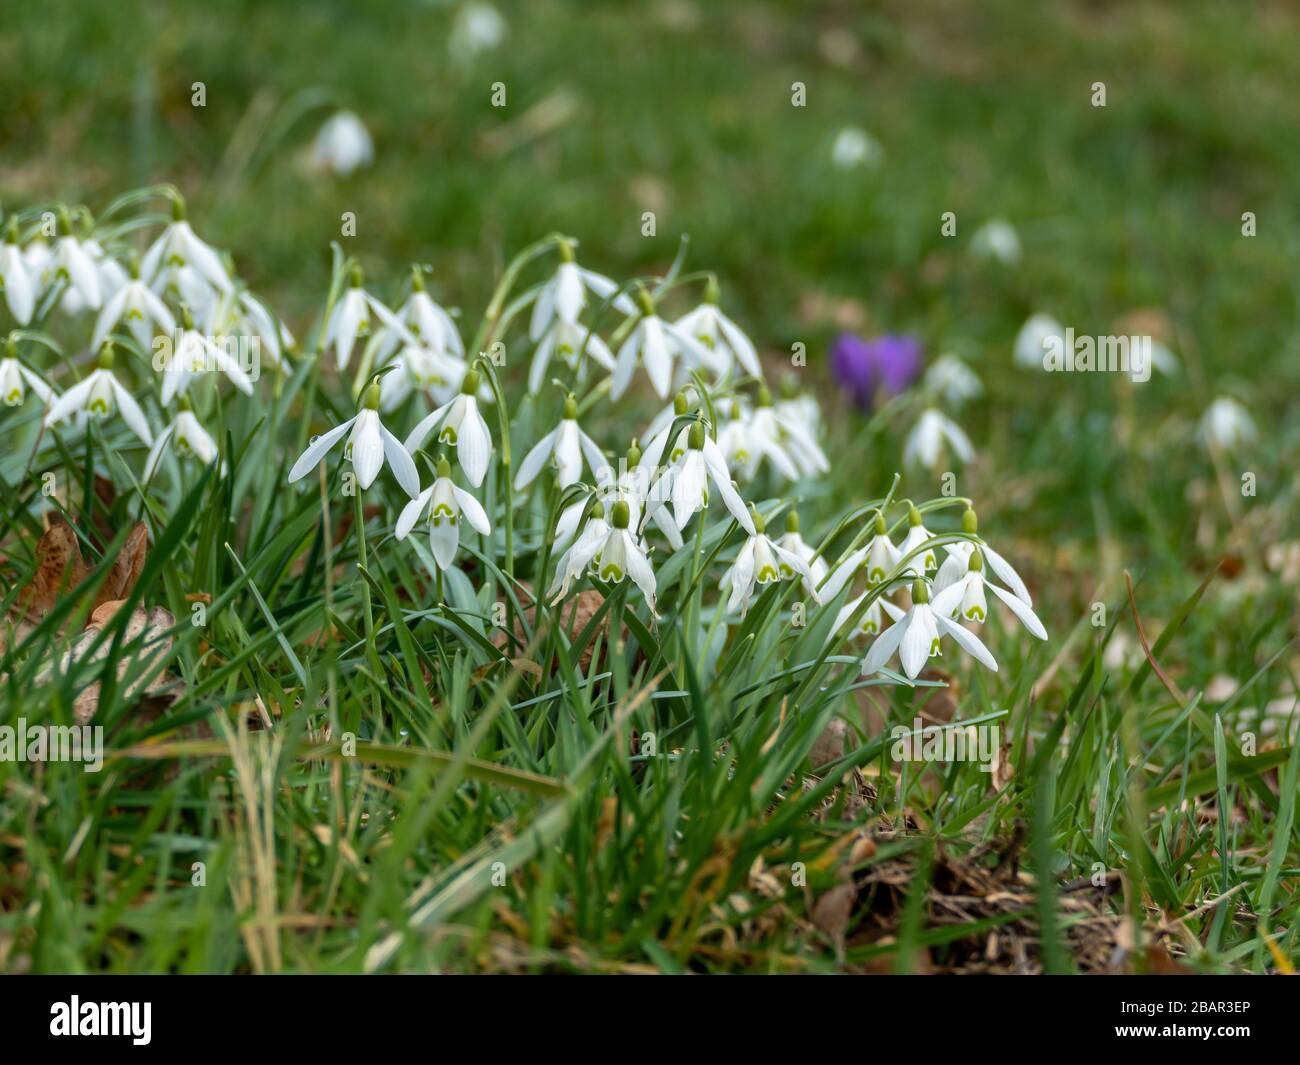 Chutes de neige communes (Galanthus nivalis) dans la fleur sur une clôture de maédine Banque D'Images